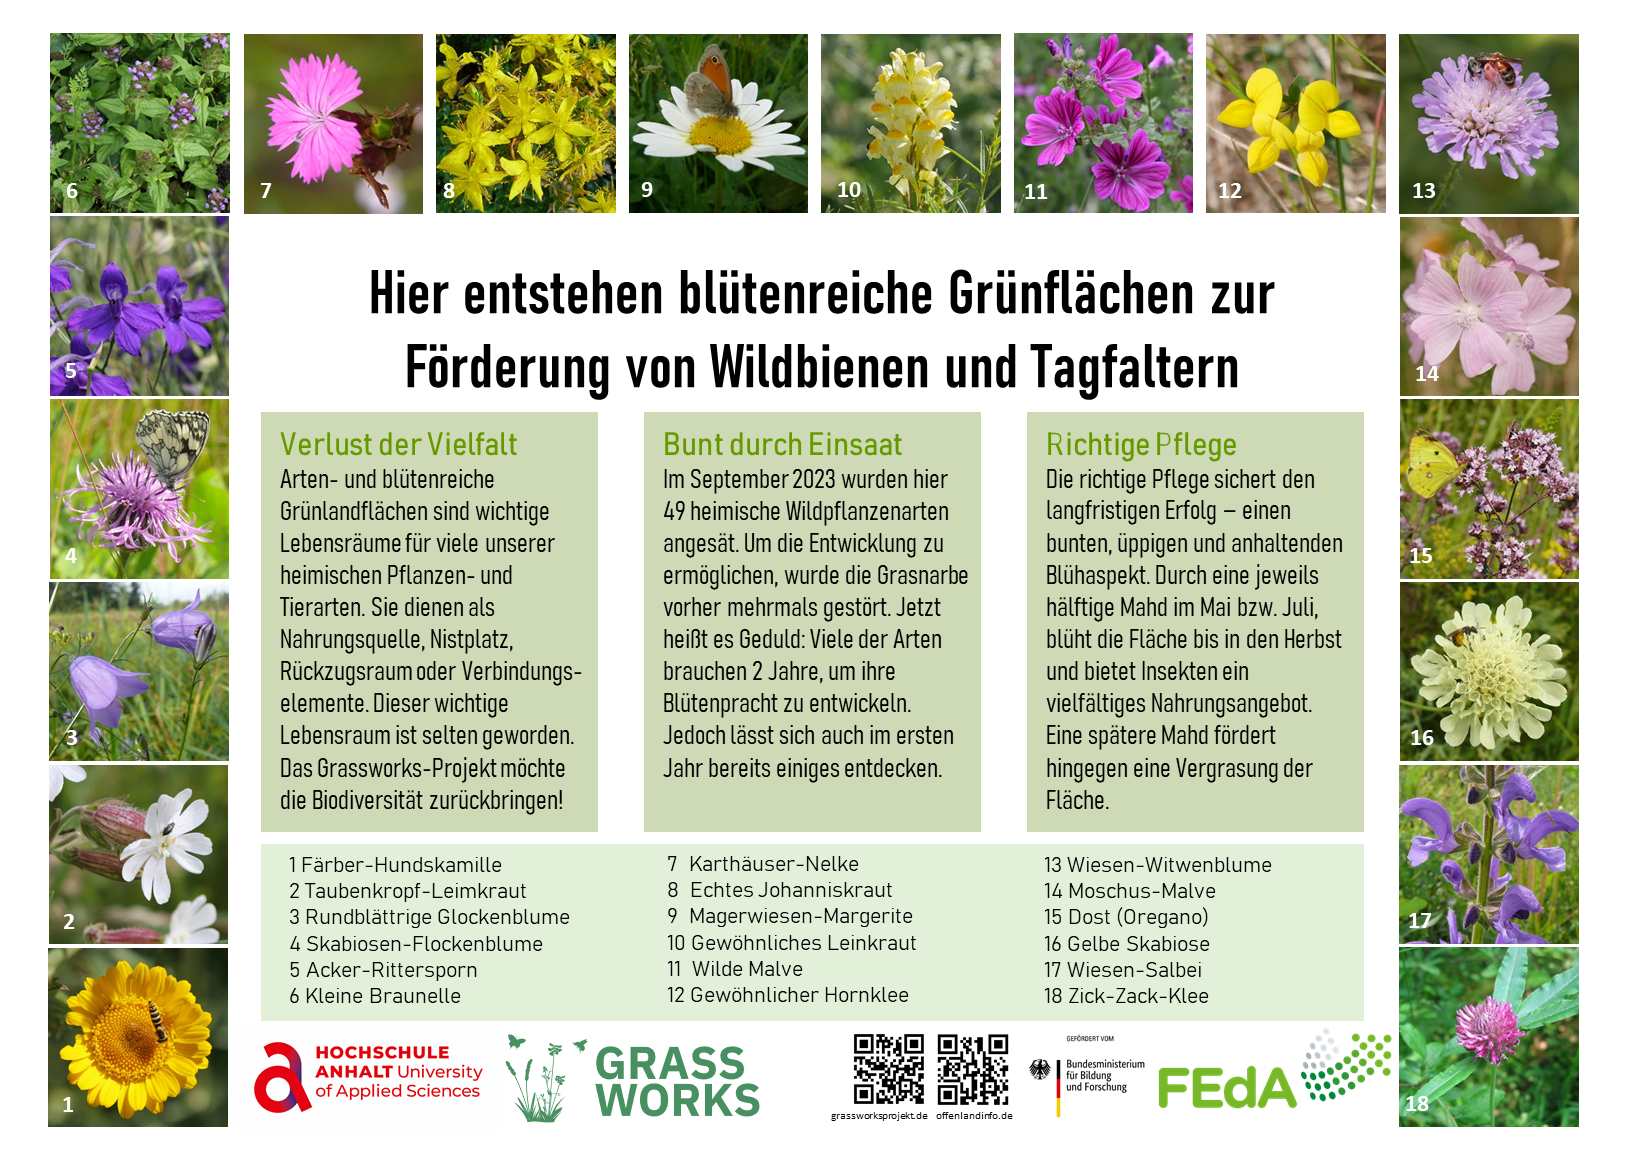 Informationstafel zu Grünland und seinen Arten mit Bildern und Nennung verschiedener Pflanzen und Insekten.